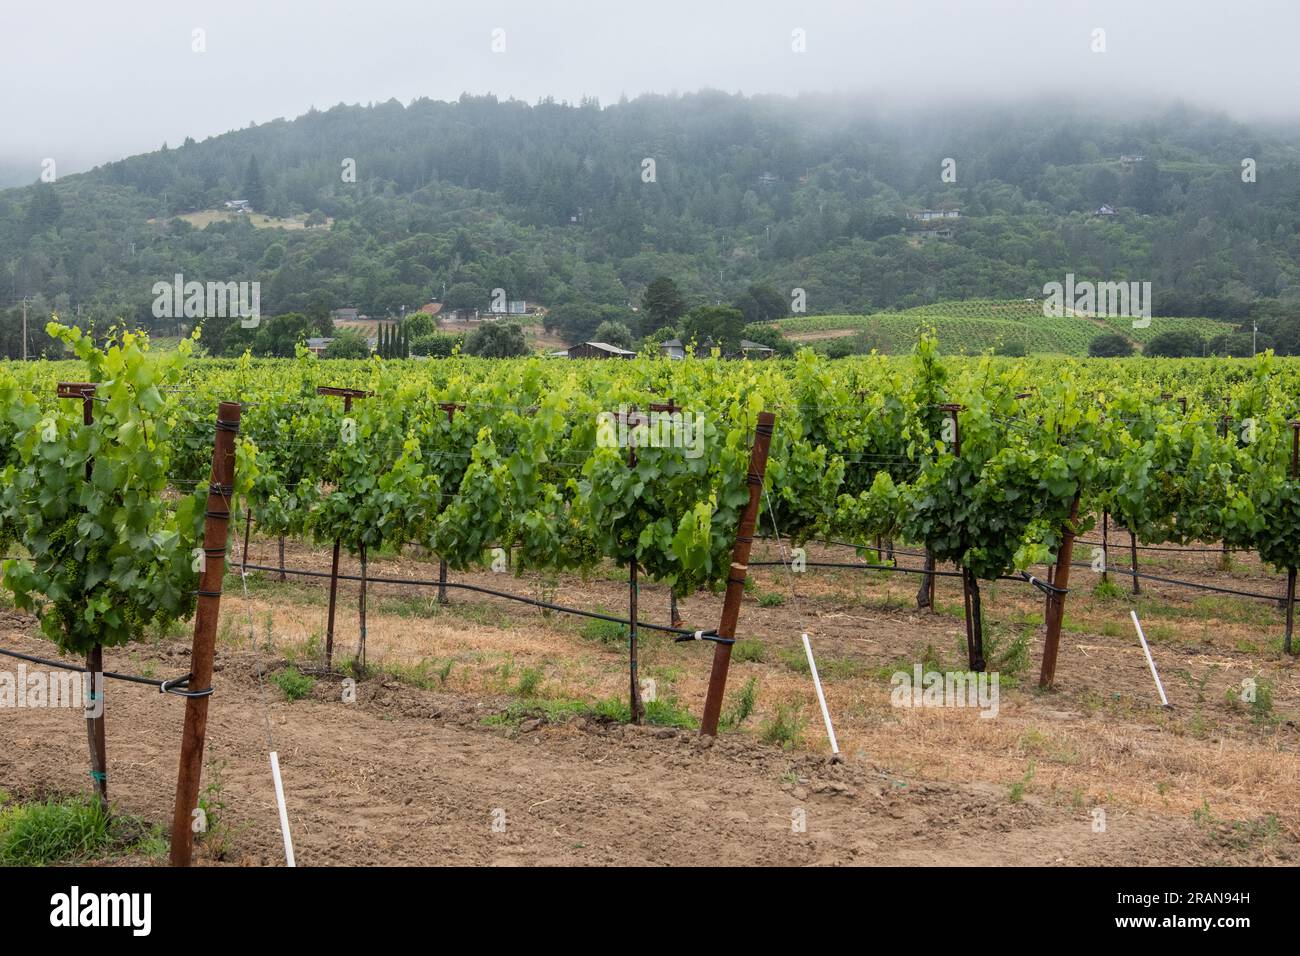 Ein Weinberg und Trauben, die für die Weinproduktion in Sonoma County, Kalifornien, bestimmt sind. Ein wichtiges Zentrum für Weinbau in Nordamerika. Stockfoto